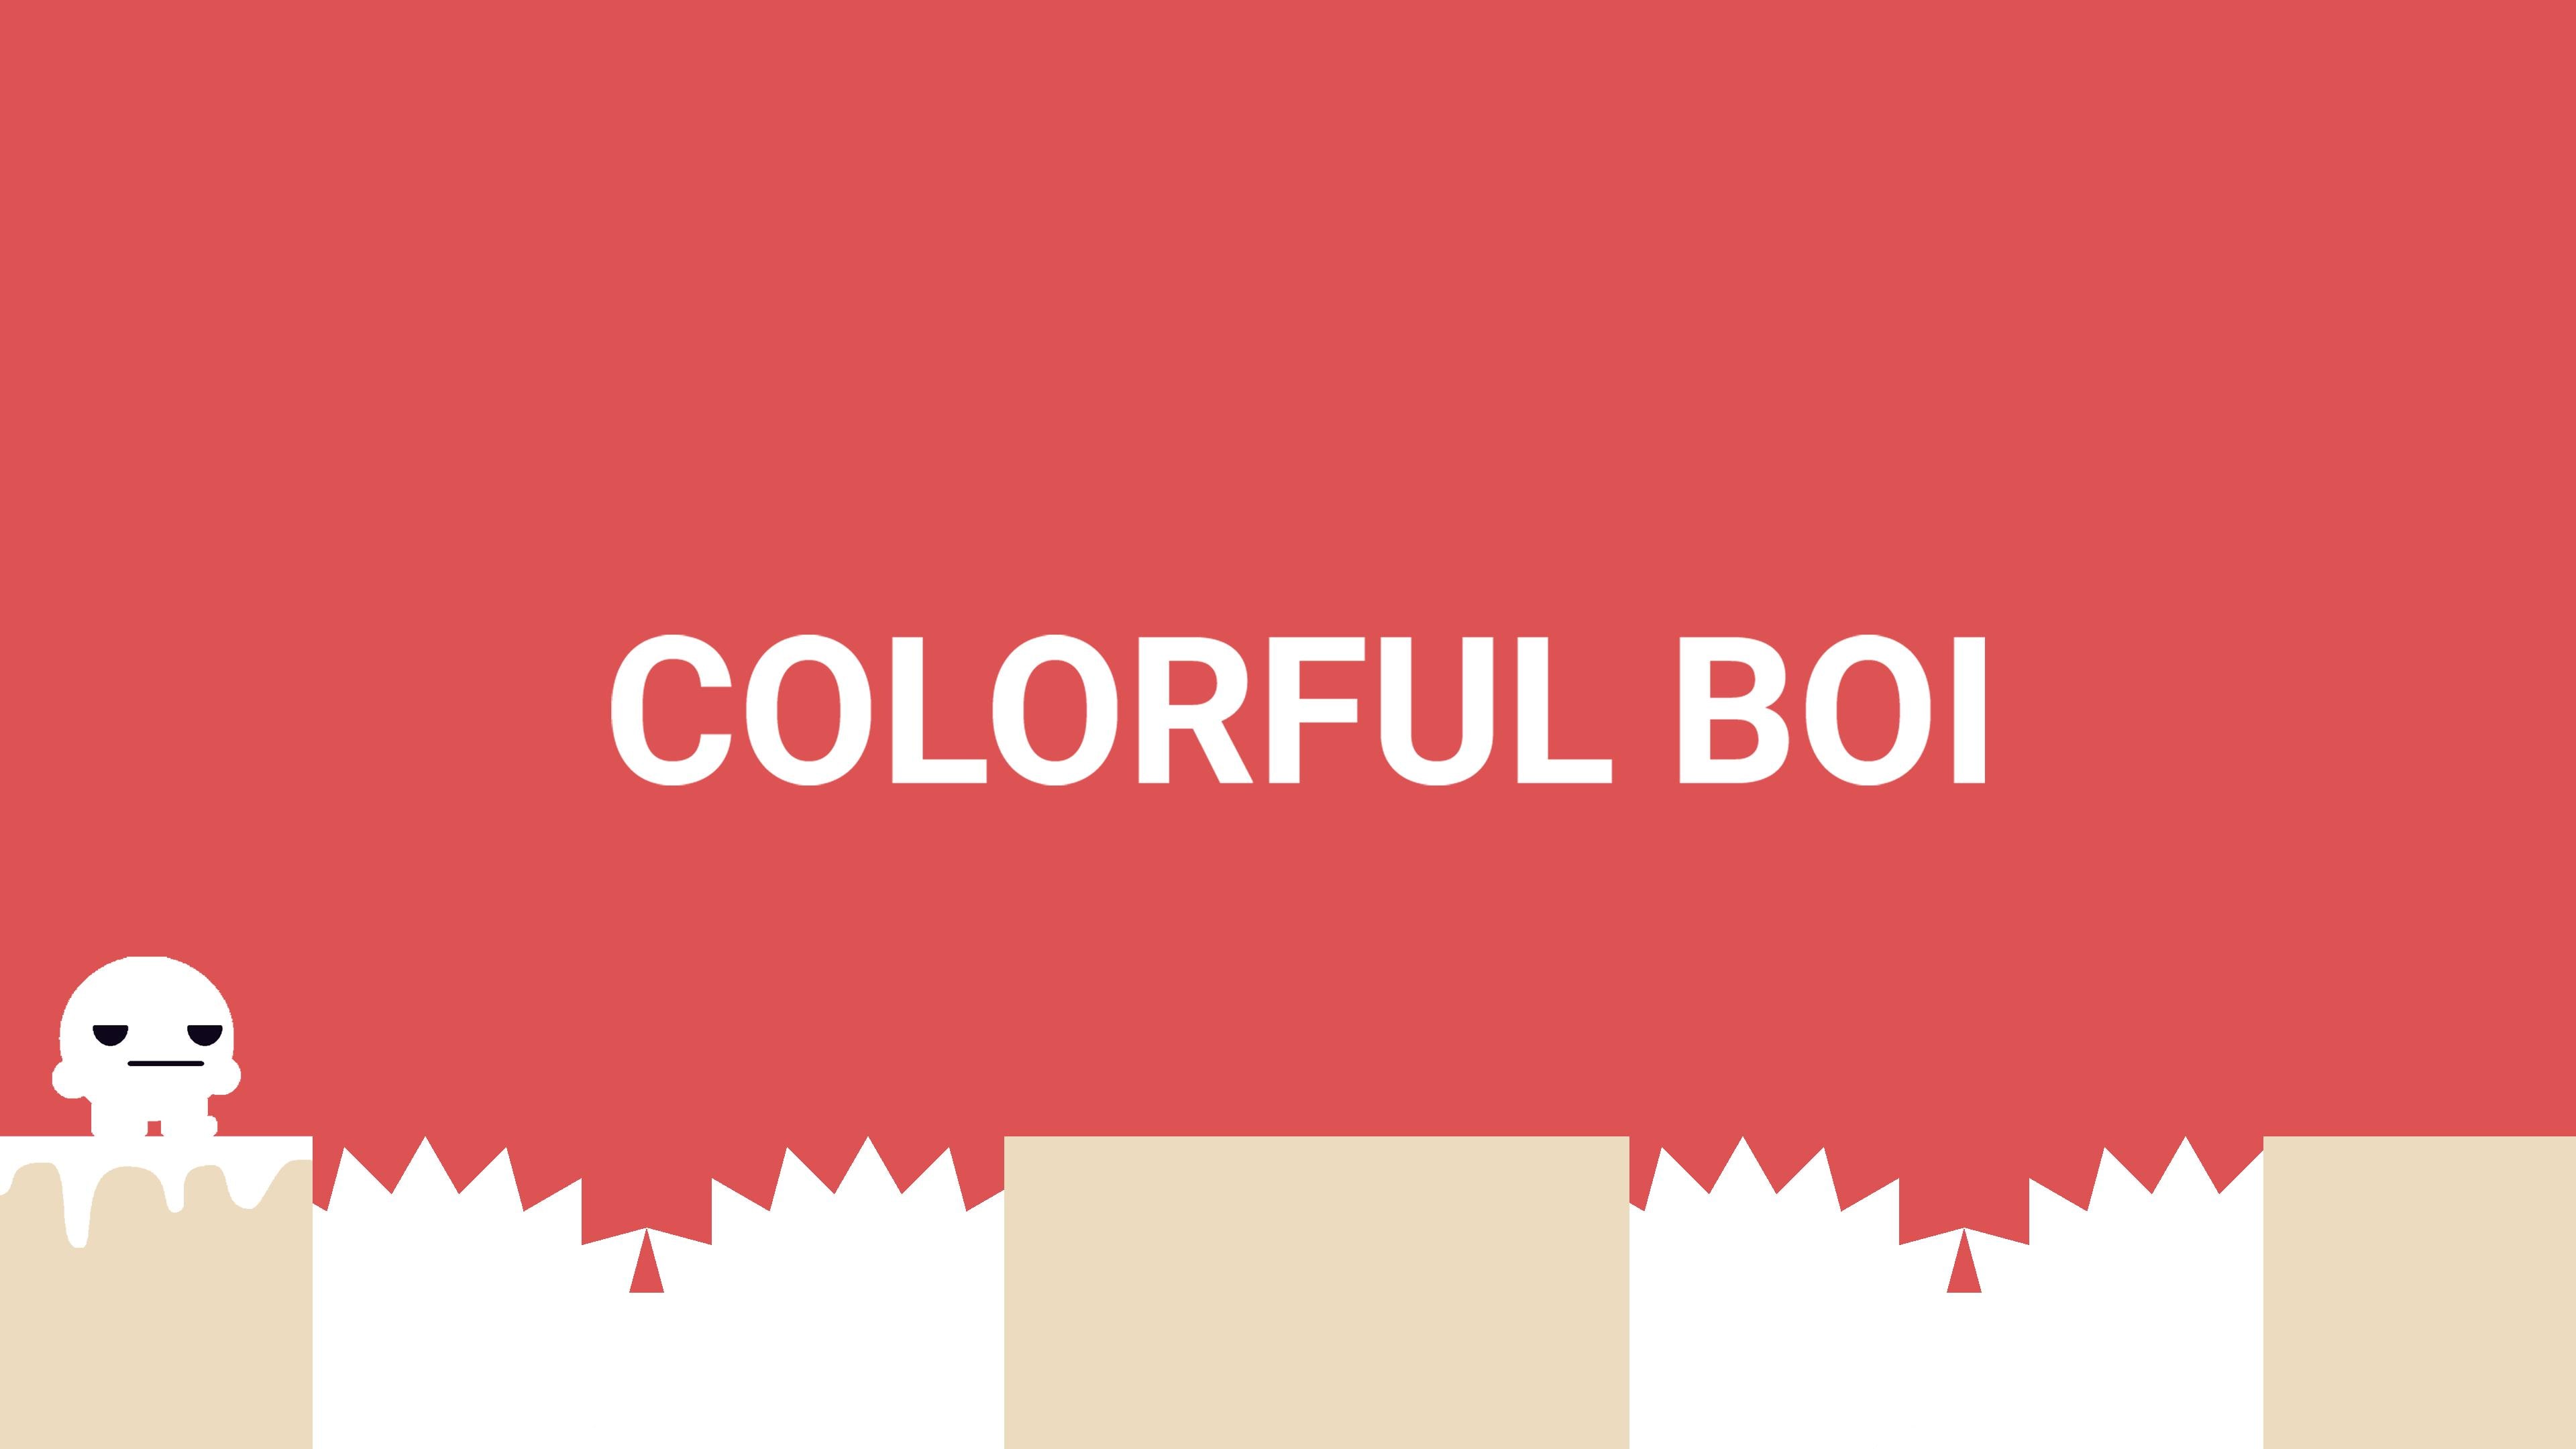 Colorful Boi (英语)